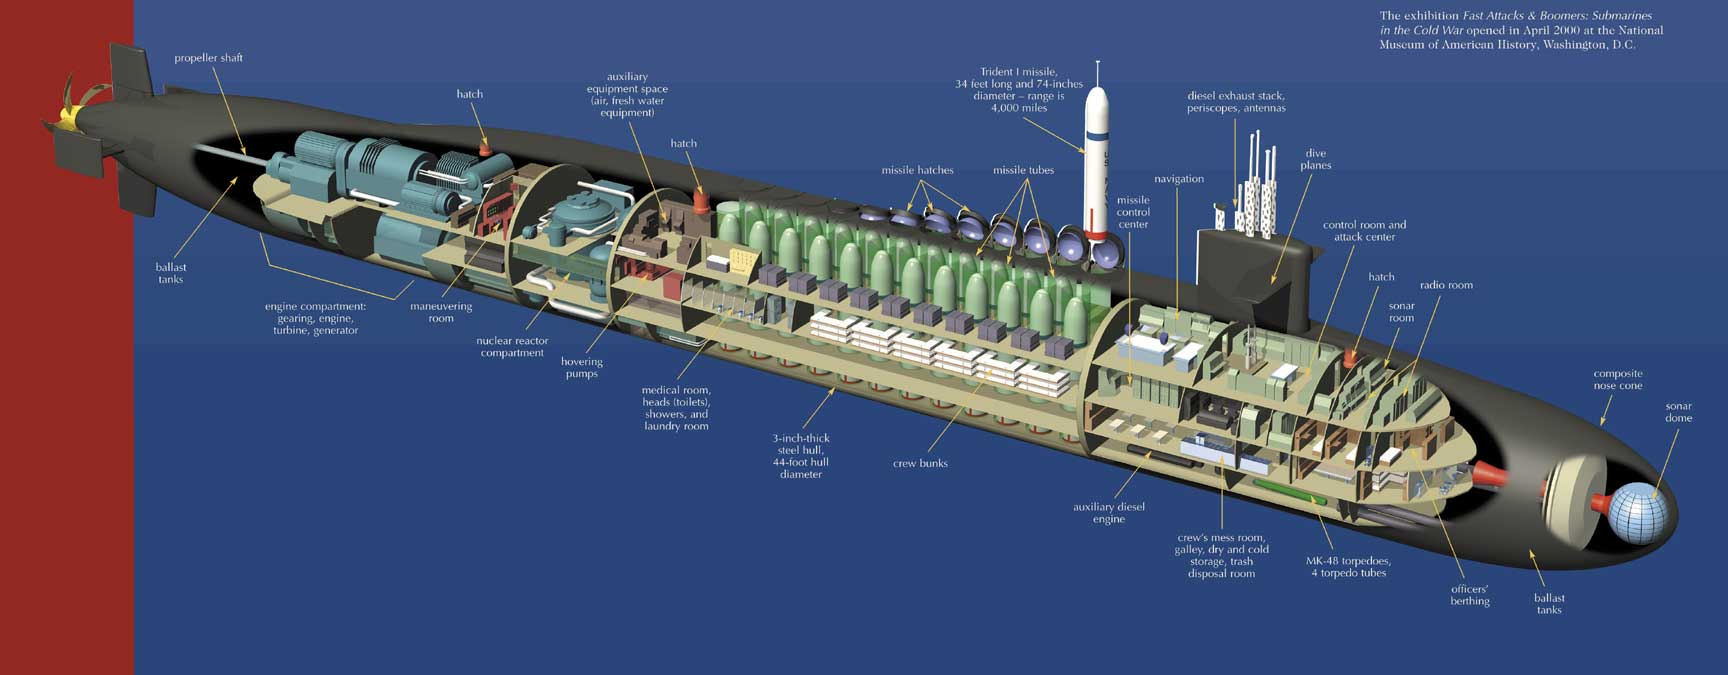 Большая торпеда. Подводная лодка Борей в разрезе. Подводная лодка Огайо схема. Подводная лодка класса Огайо. Схема подводной лодки Борей.